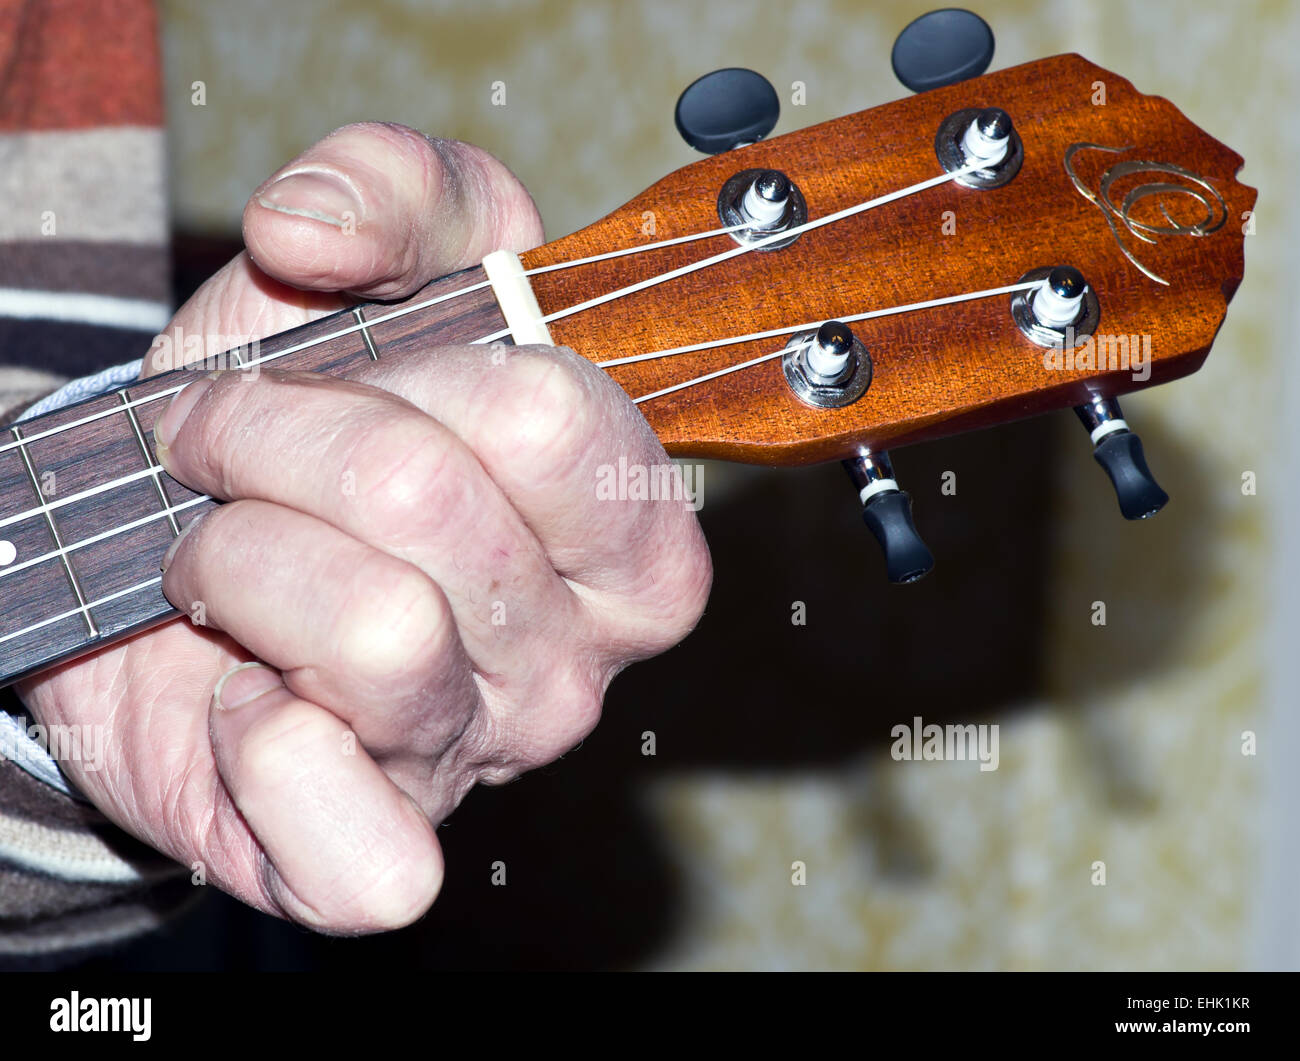 Hand on ukulele neck Stock Photo - Alamy